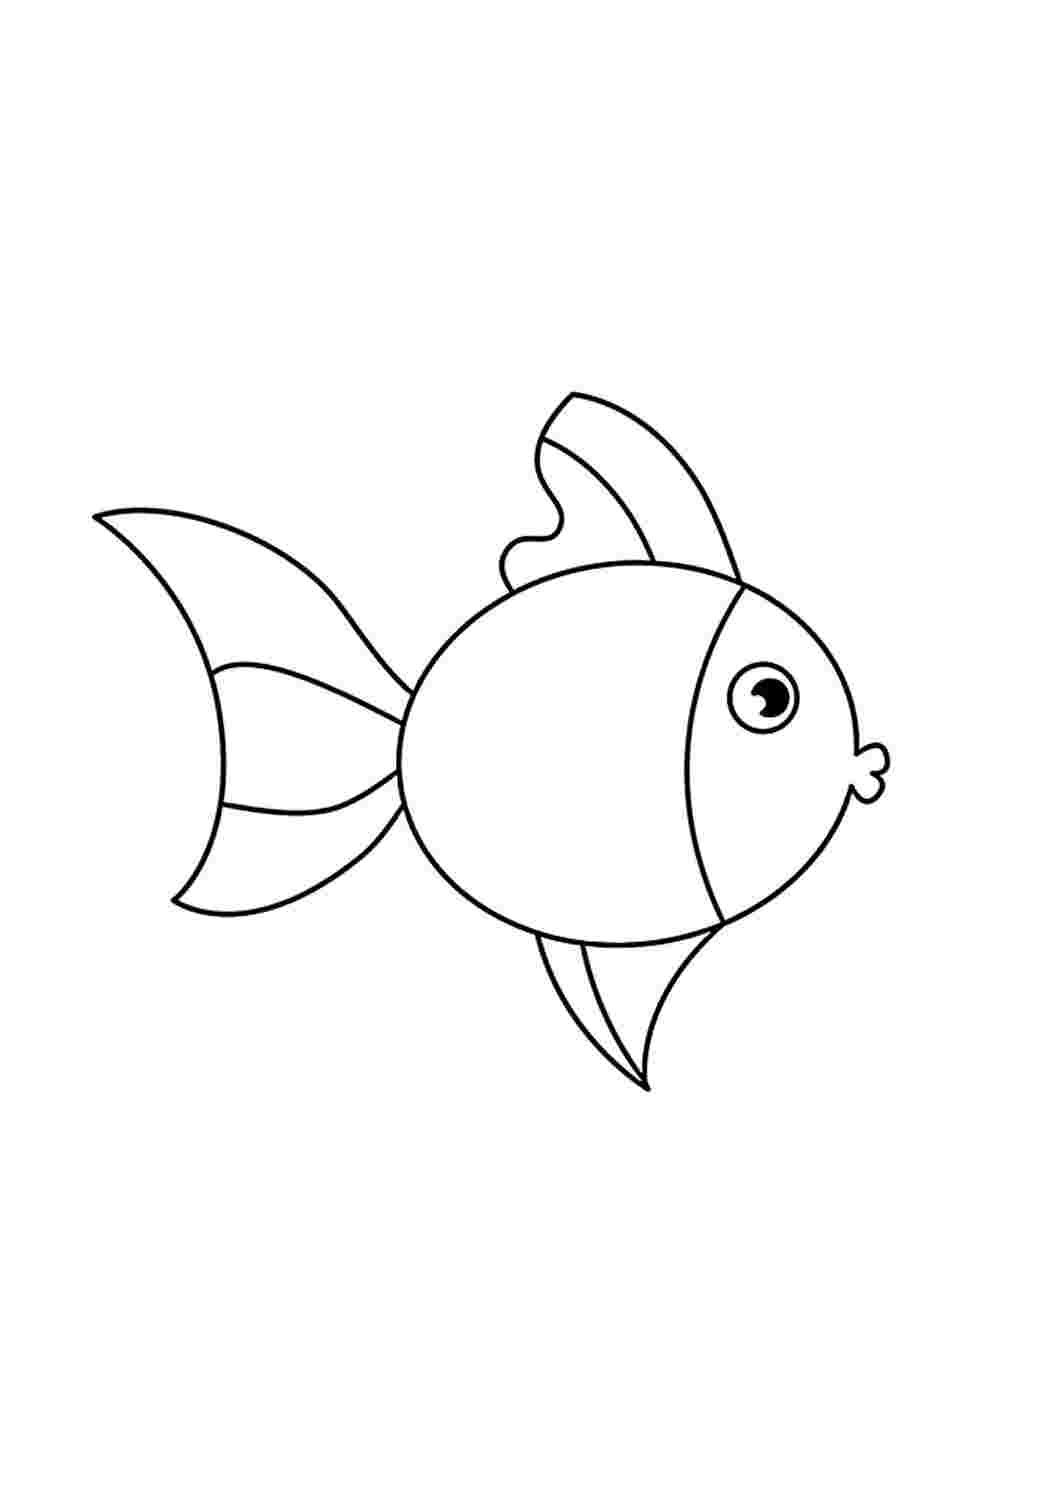 Трафарет золотой рыбки для рисования